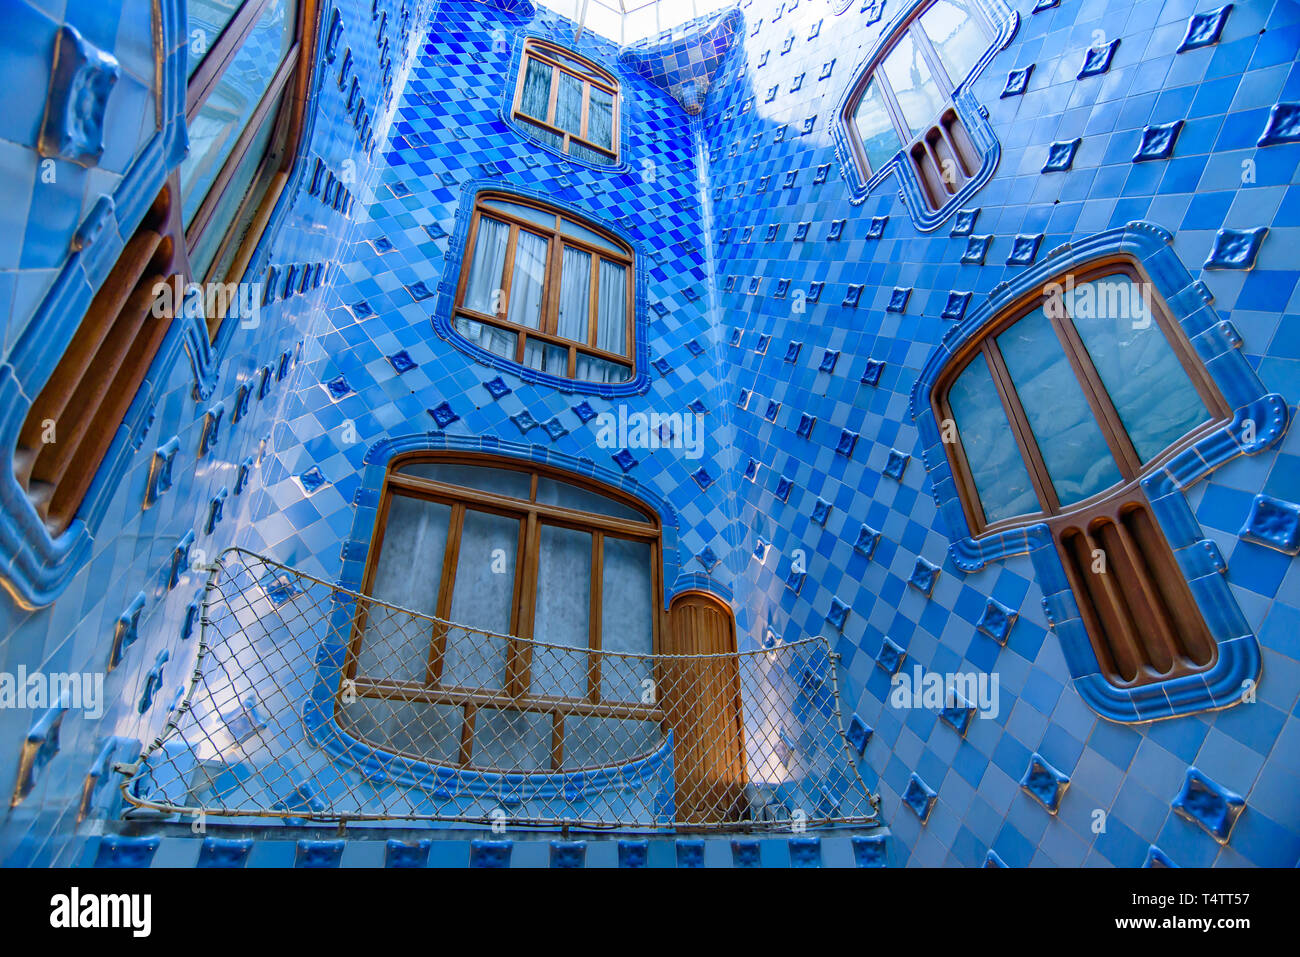 Intérieur de la Casa Batlló, un bâtiment conçu par Gaudi, à Barcelone, Espagne Banque D'Images